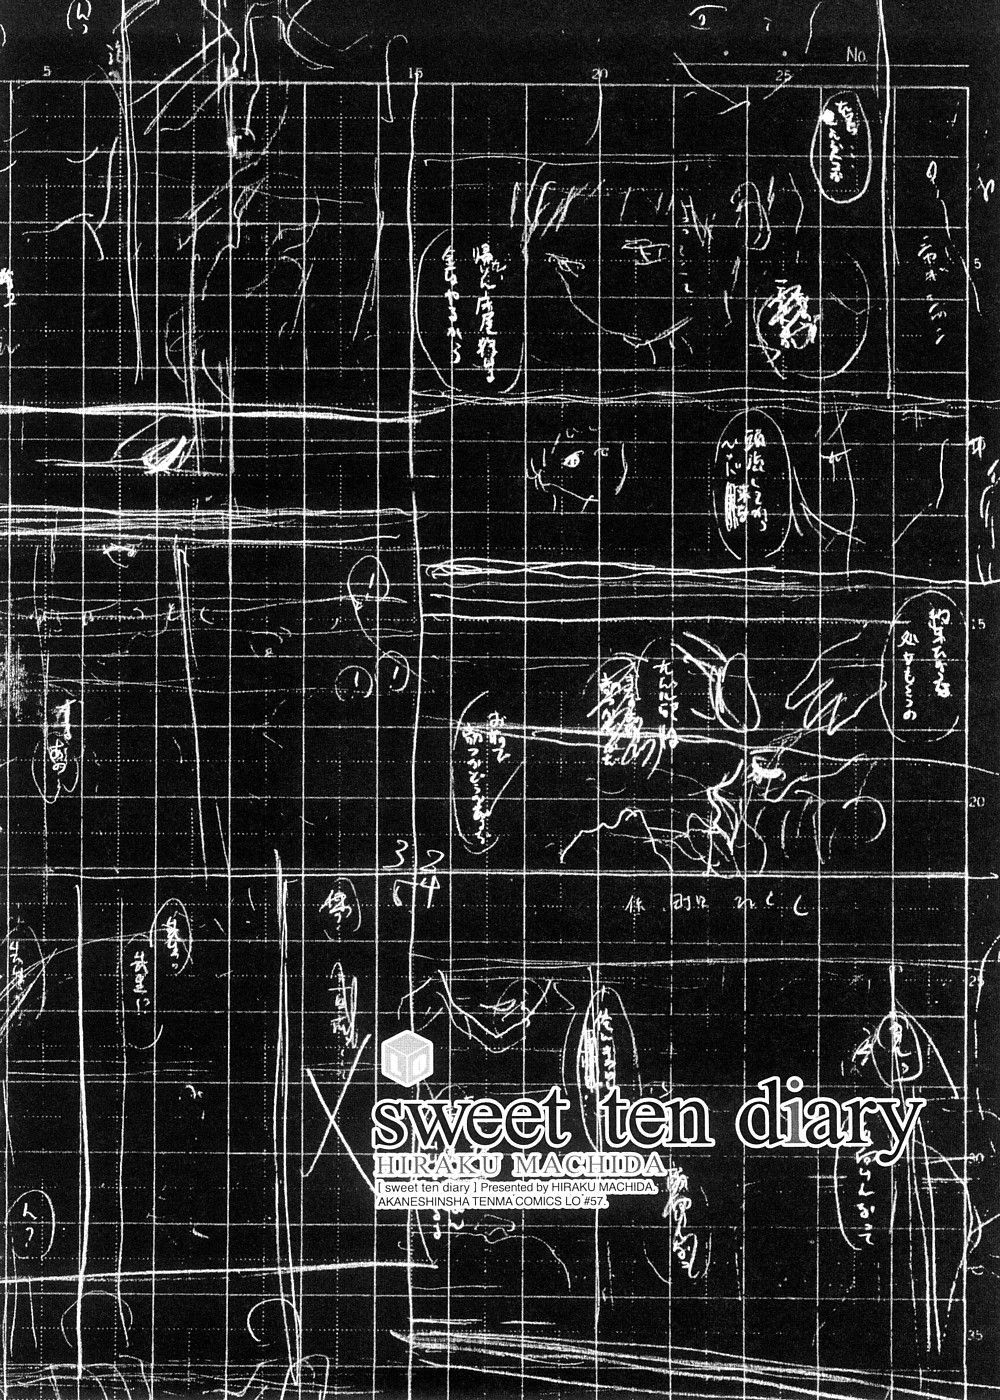 [町田ひらく] sweet ten diary